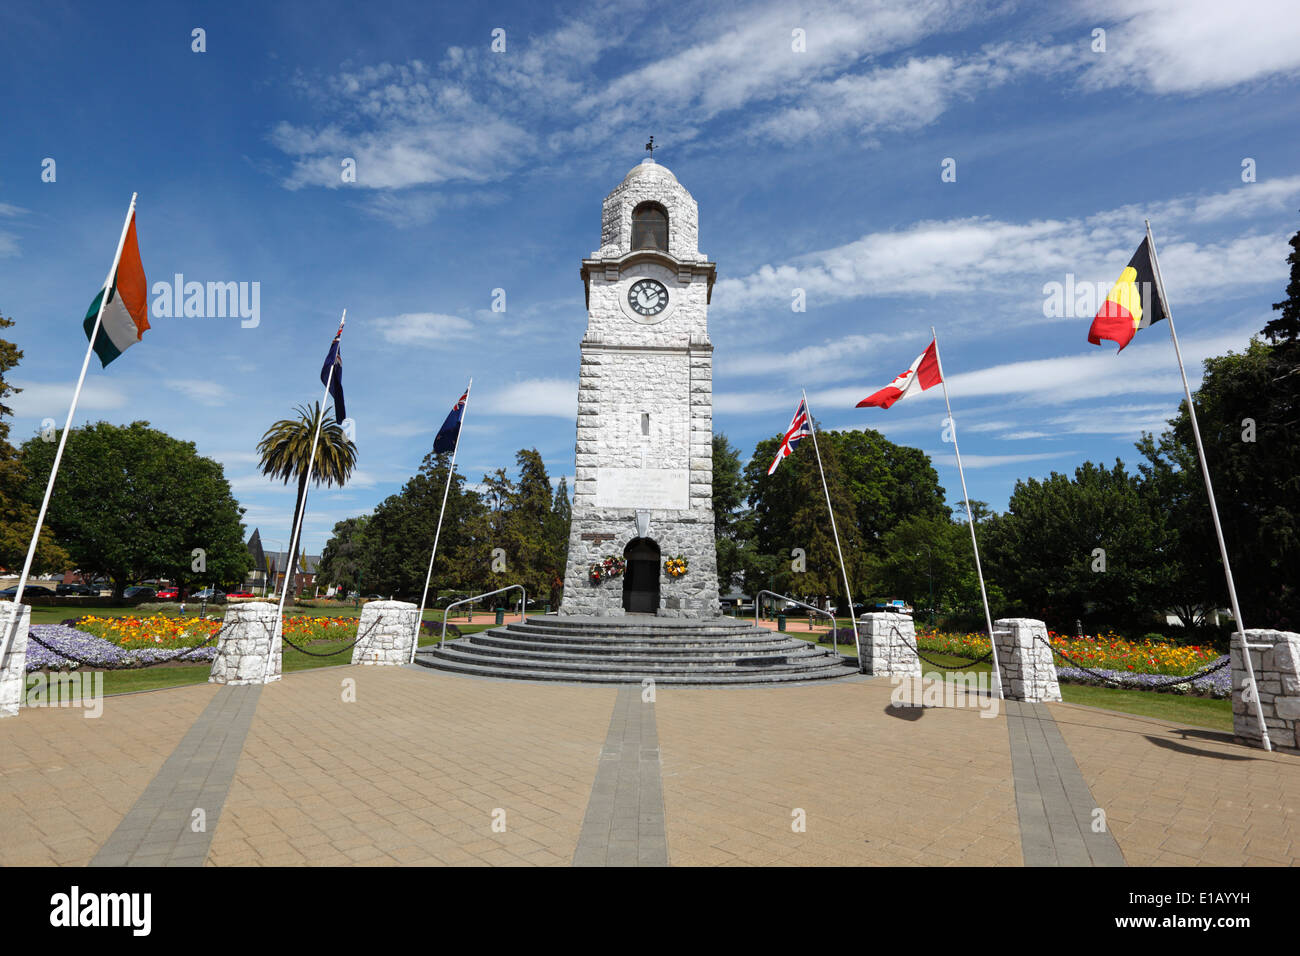 Place Seymour et tour de l'horloge, Blenheim, région de Marlborough, île du Sud, Nouvelle-Zélande, Pacifique Sud Banque D'Images